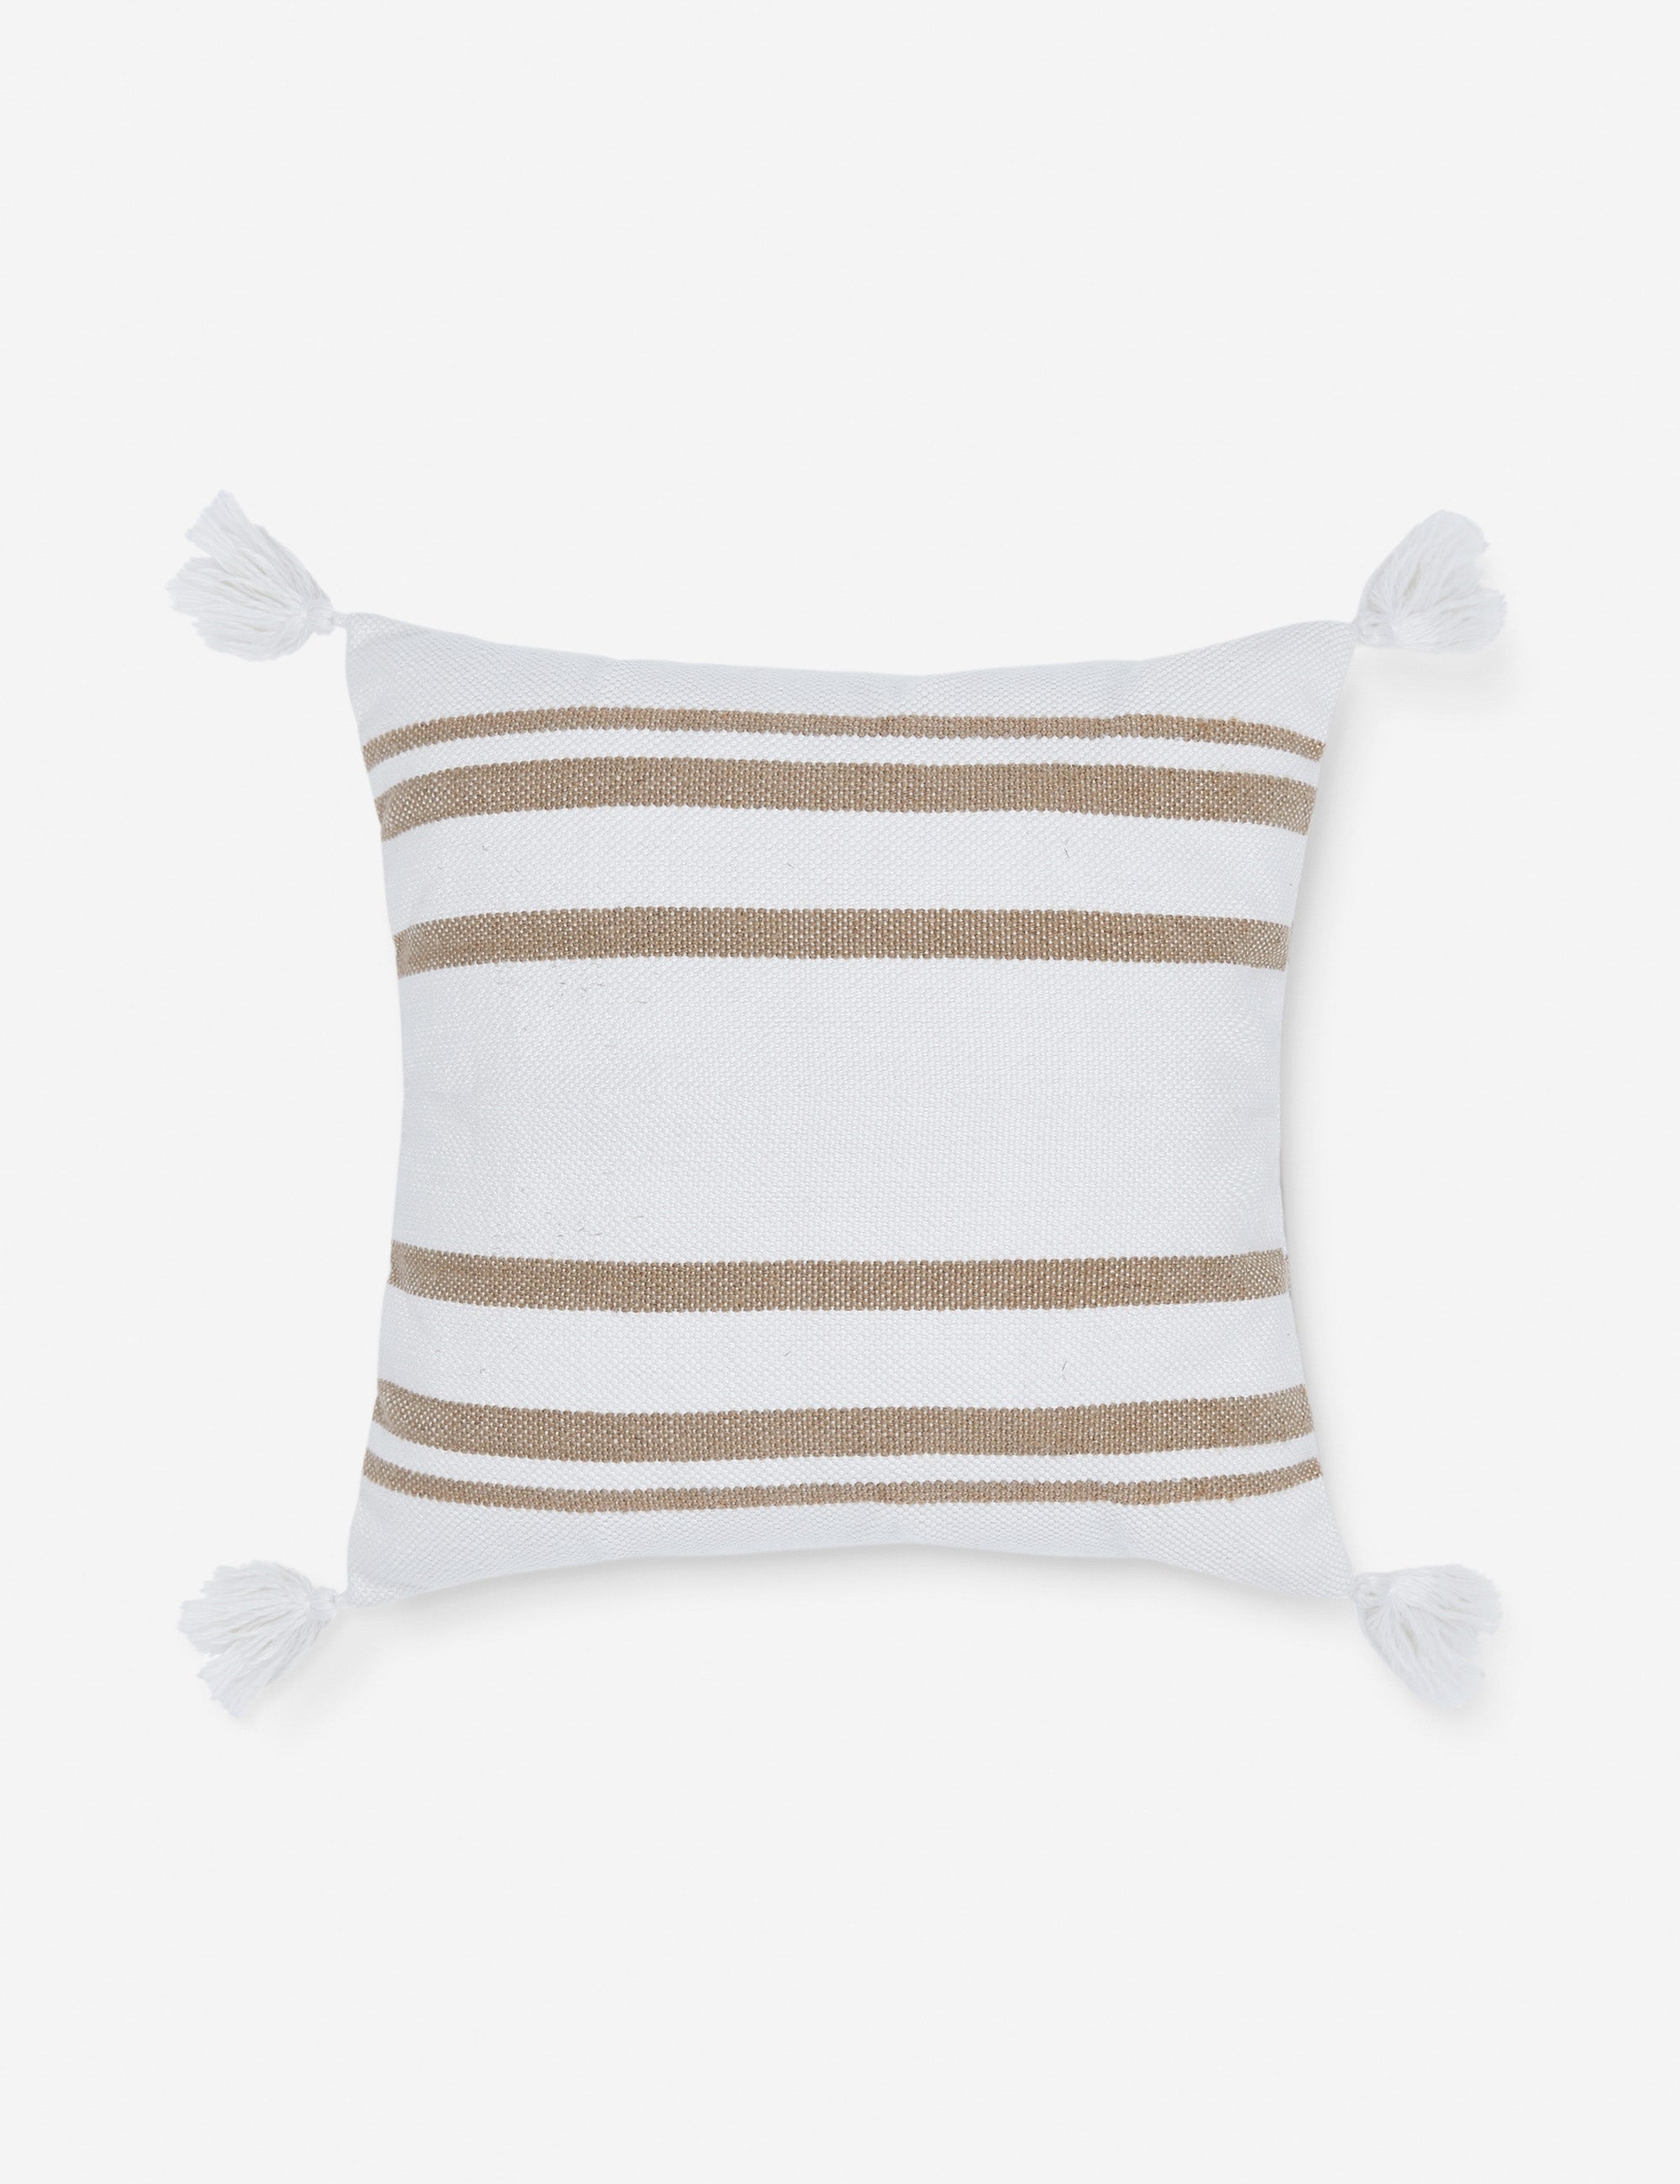 Fez Indoor / Outdoor Pillow, Camel